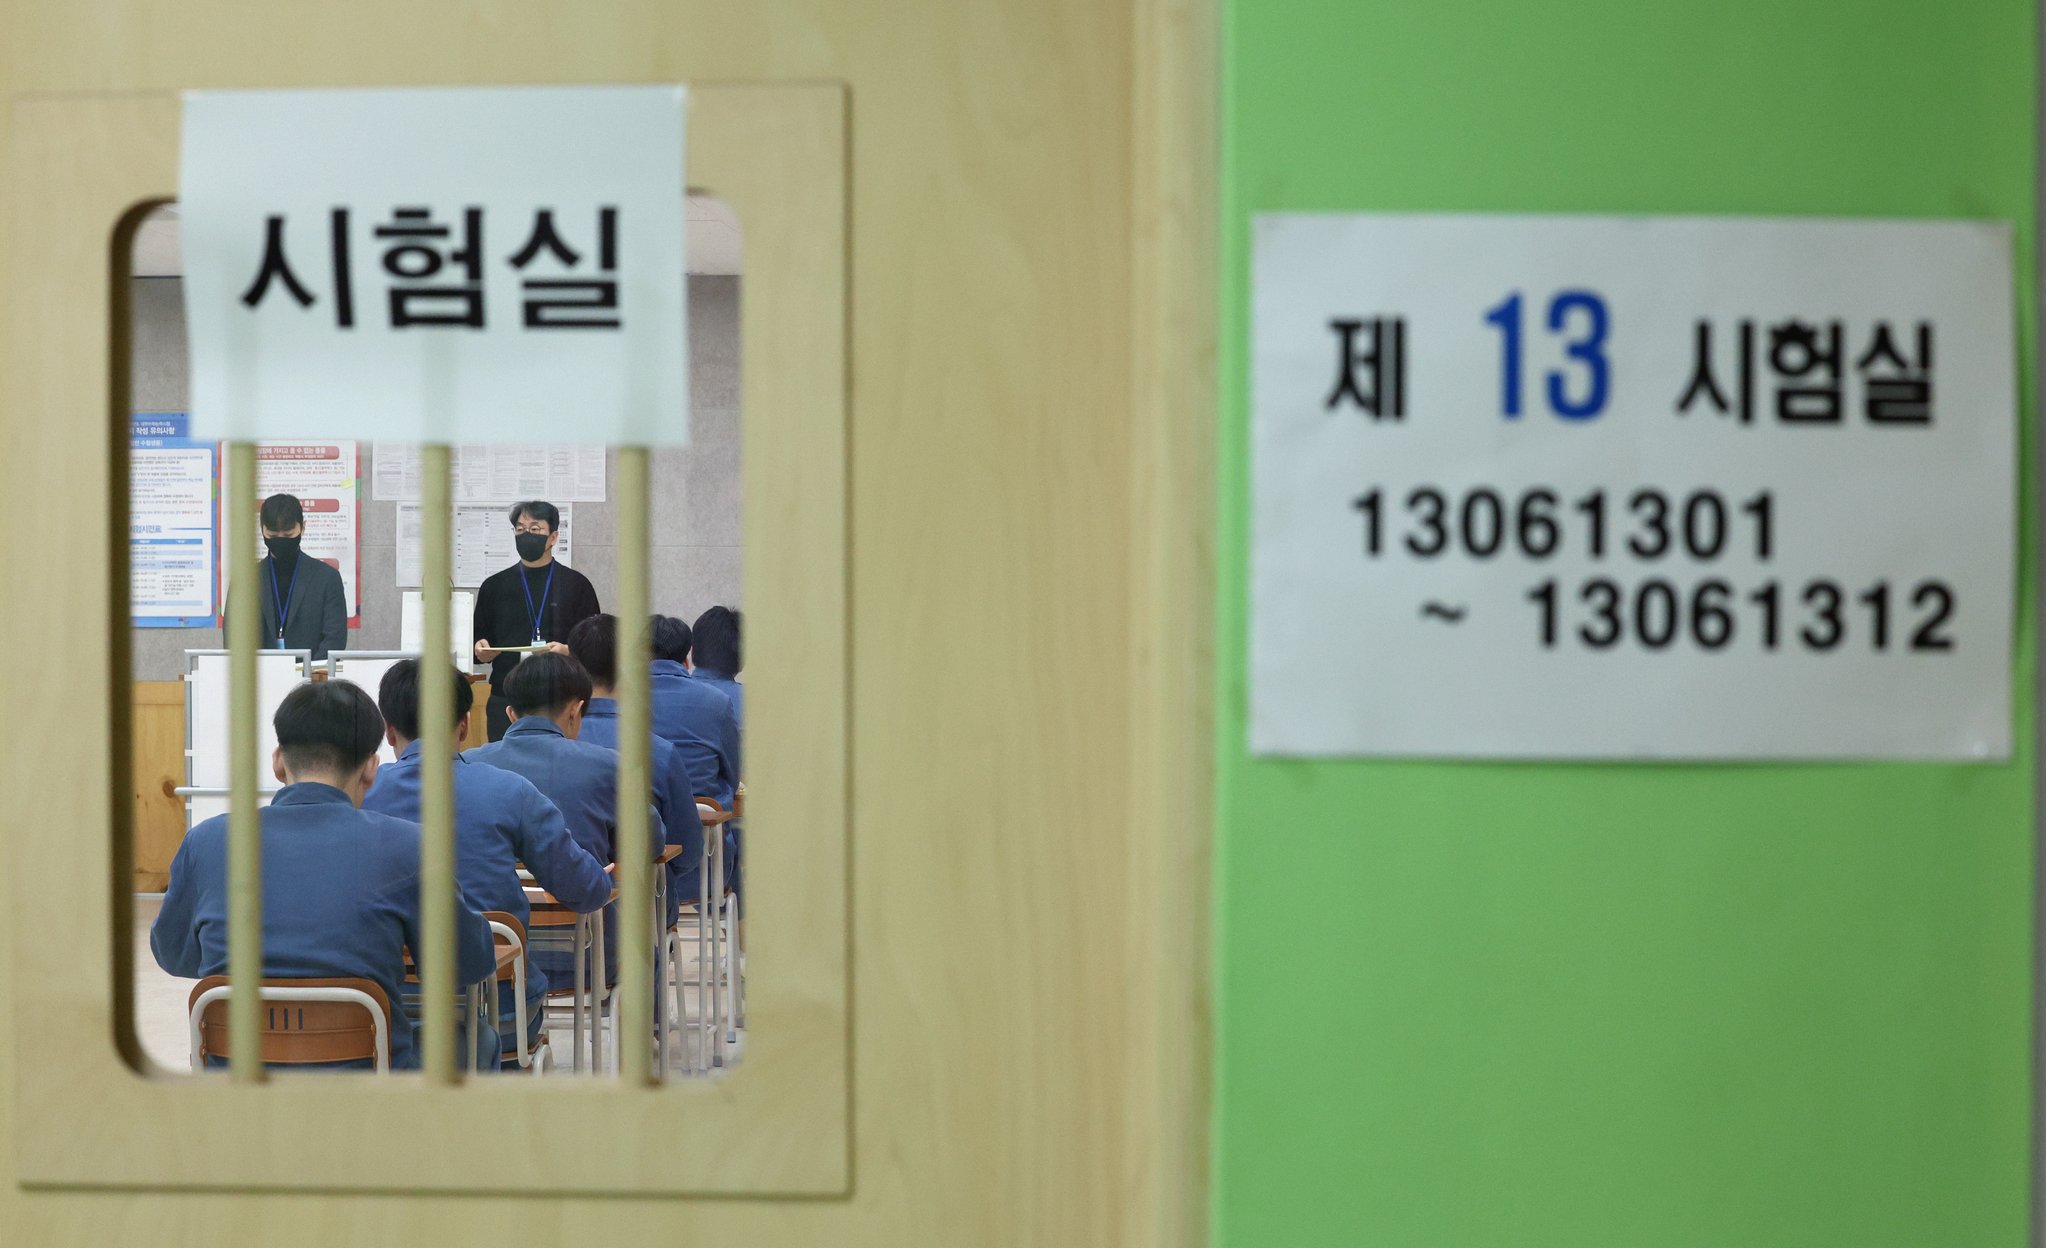 서울 구로구 남부교도소에서 소년수들이 수능 시험 준비를 하고 있다.   지금까지 성인 수감자들이 교도소에서 수능을 치른 적은 있었지만 교도소 내에 수능시험장이 마련되는 것은 이번이 처음이다. 뉴스1